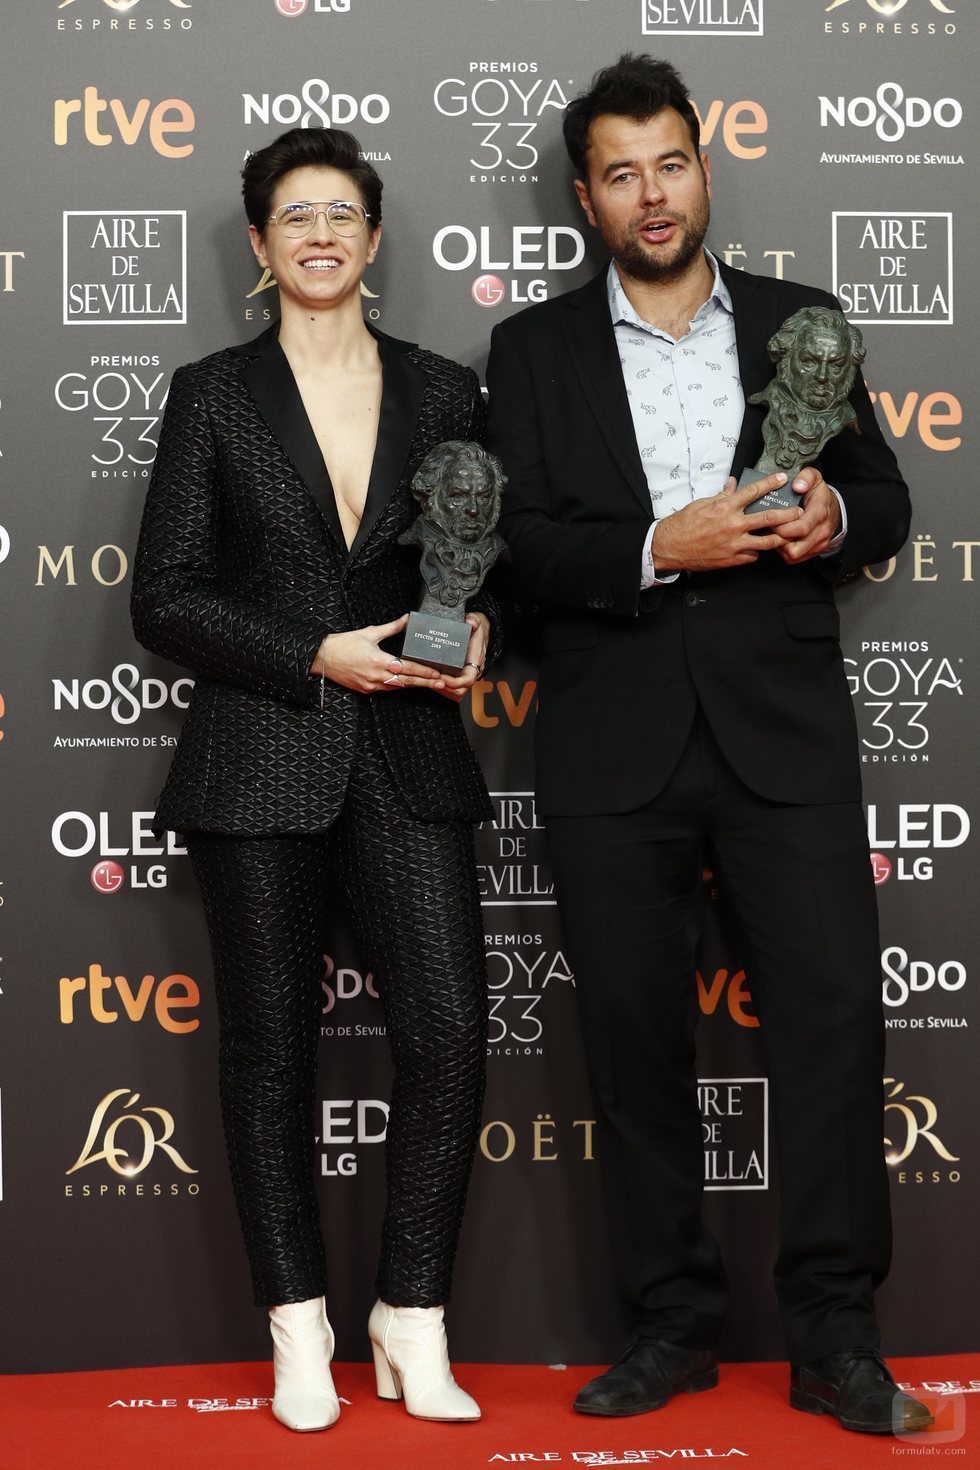 Laura Pedro y Lluís Rivera con su Goya 2019 a Mejores efectos especiales por "Superlópez"